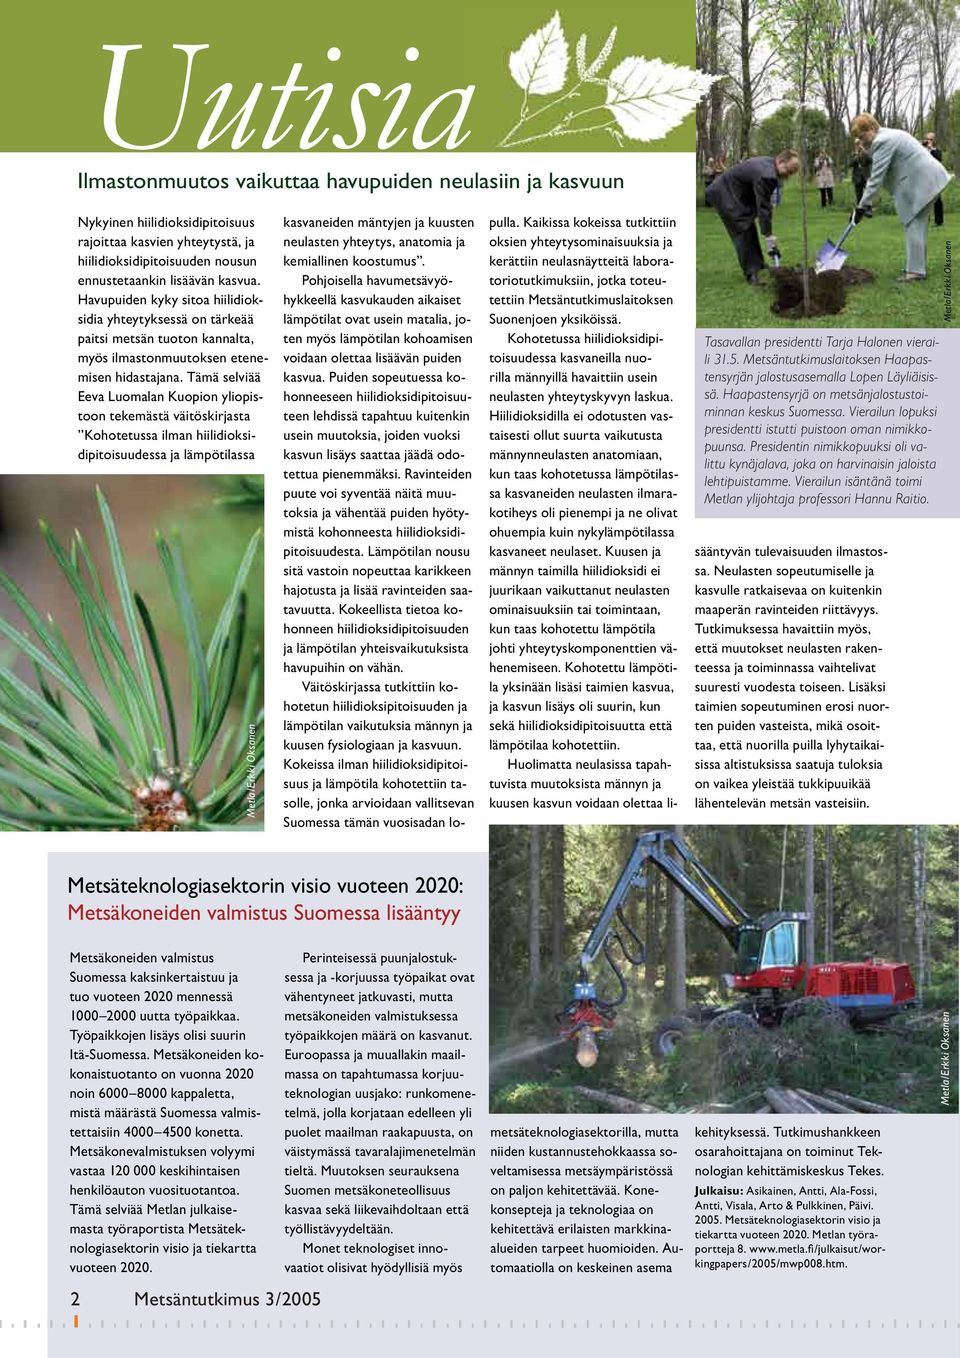 Tämä selviää Eeva Luomalan Kuopion yliopistoon tekemästä väitöskirjasta Kohotetussa ilman hiilidioksidipitoisuudessa ja lämpötilassa Metsäteknologiasektorin visio vuoteen 2020: Metsäkoneiden